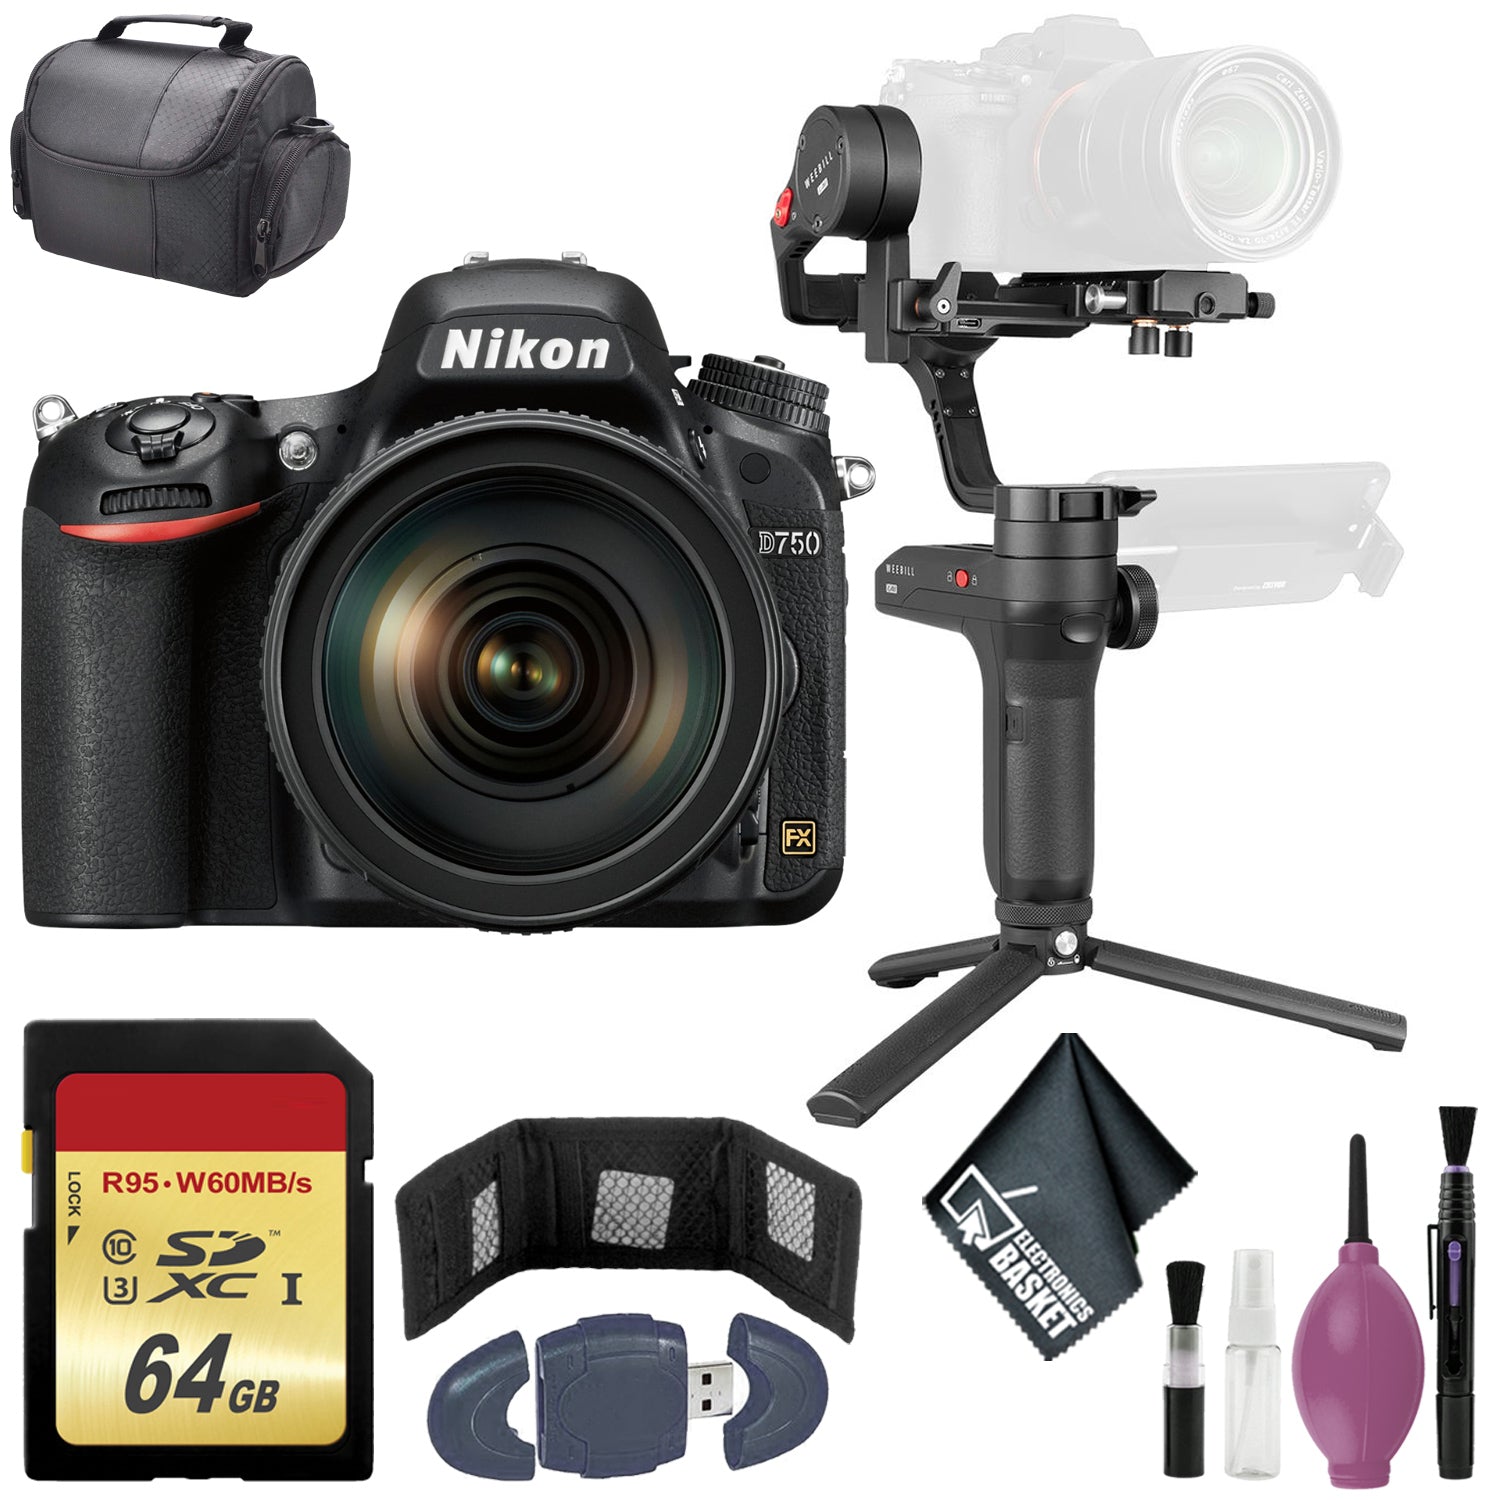 Zhiyun-Tech WEEBILL LAB Handheld Stabilizer - Nikon D850 FX-format Digital SLR Camera Body w/ AF-S NIKKOR 24-120MM F/4G ED VR Lens - 64GB Case